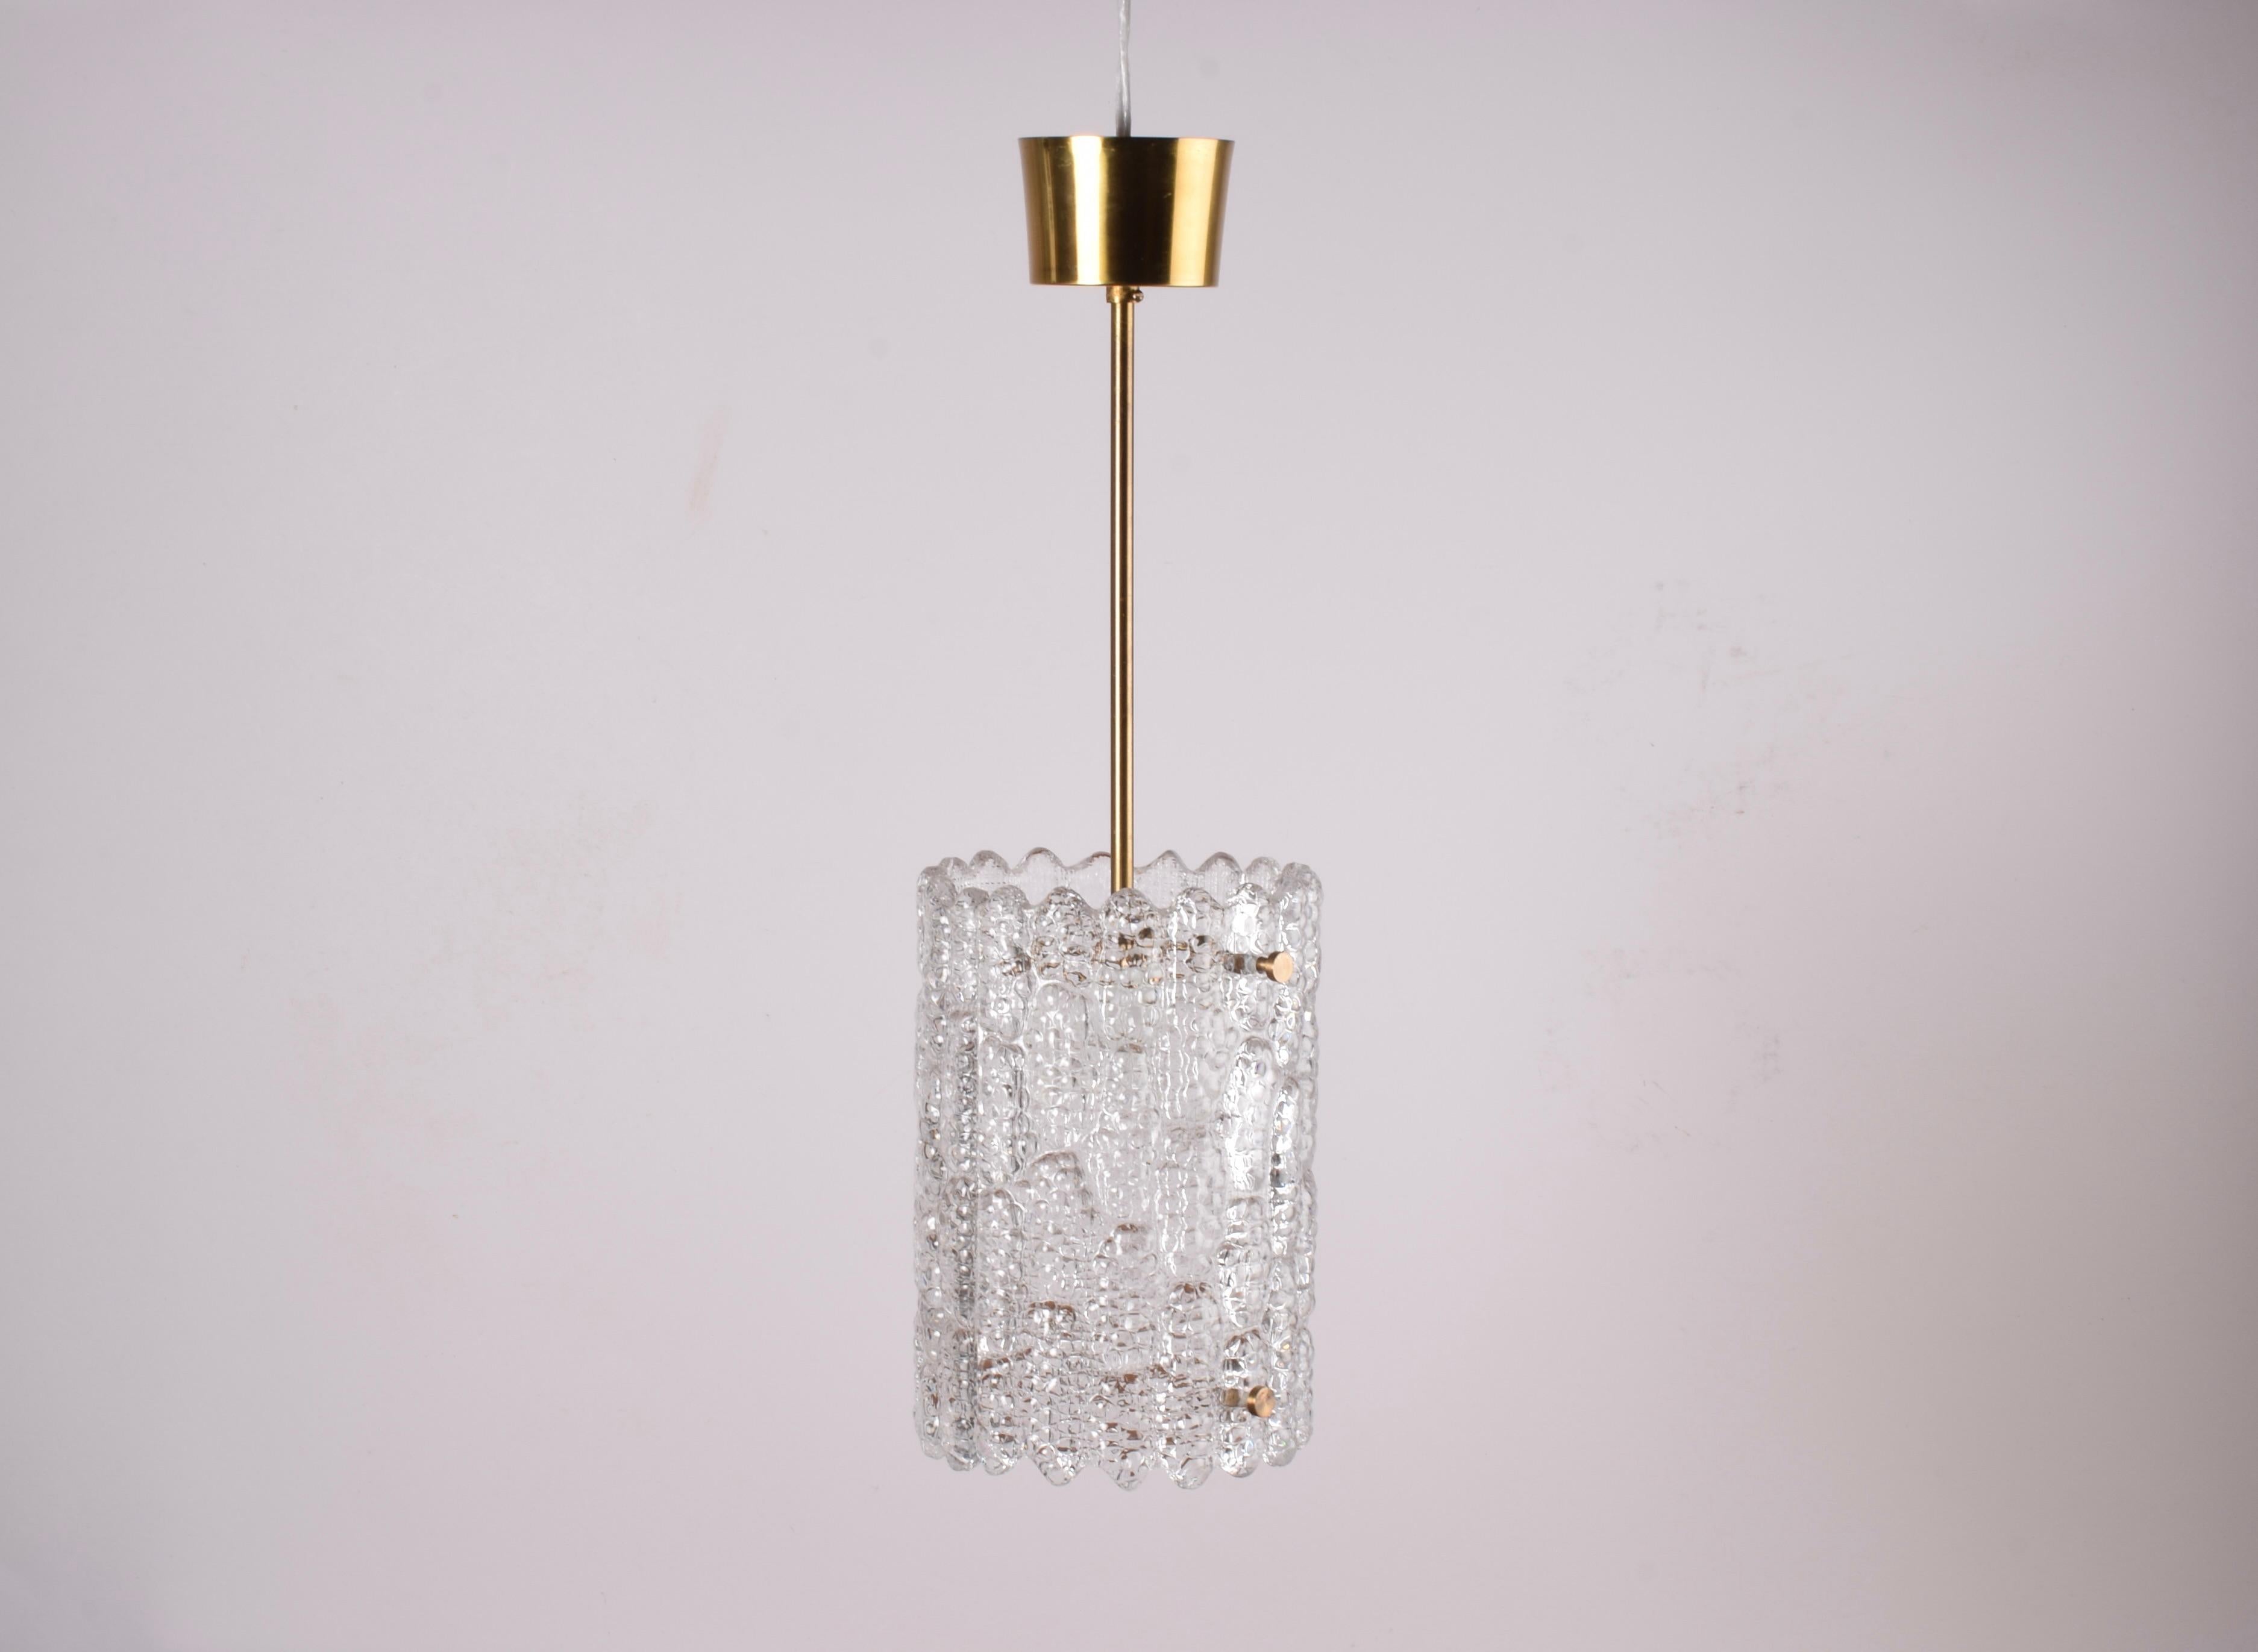 Pendentif en verre vintage du designer suédois Carl Fagerlund pour Orrefors. Fabriqué dans les années 1960. 

La lampe est fabriquée en verre translucide pressé et comporte de belles pièces en laiton. L'auvent en laiton est également inclus.

Les